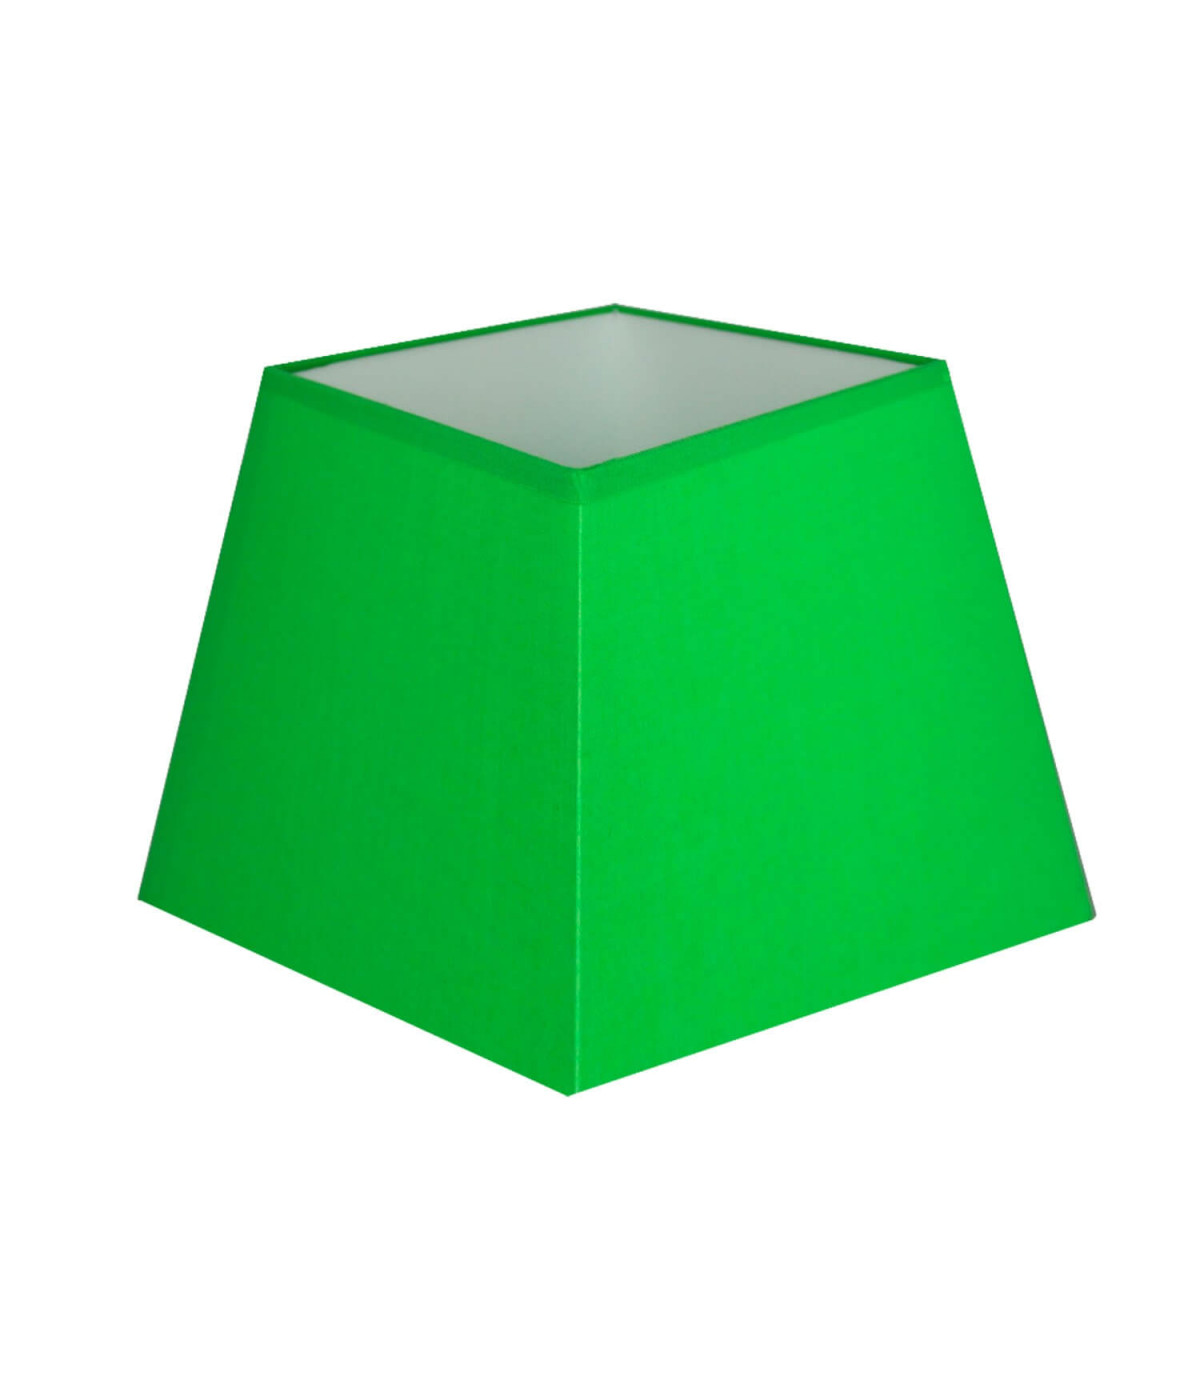 Elektrischer quadratischer Schatten der grünen Pyramide